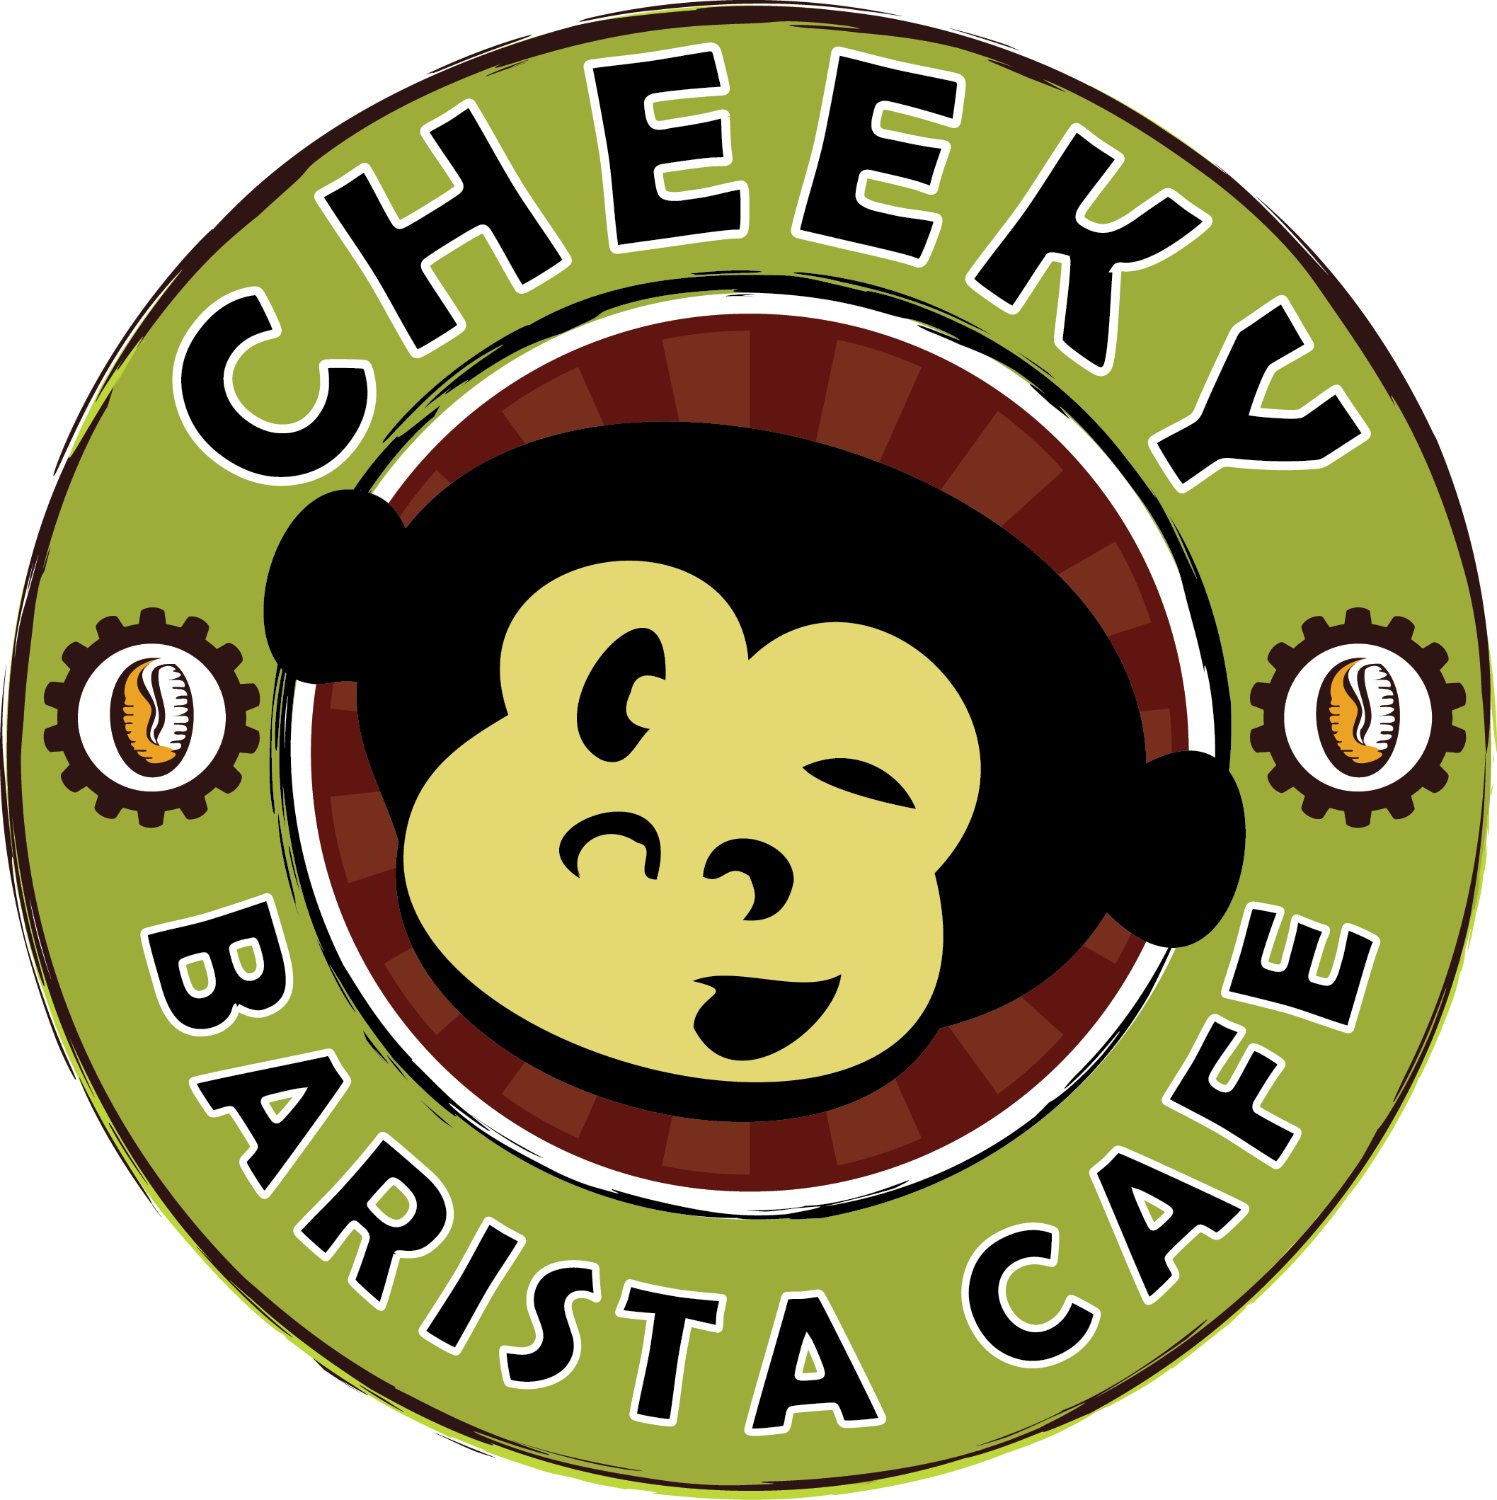 Cheeky Barista Cafe